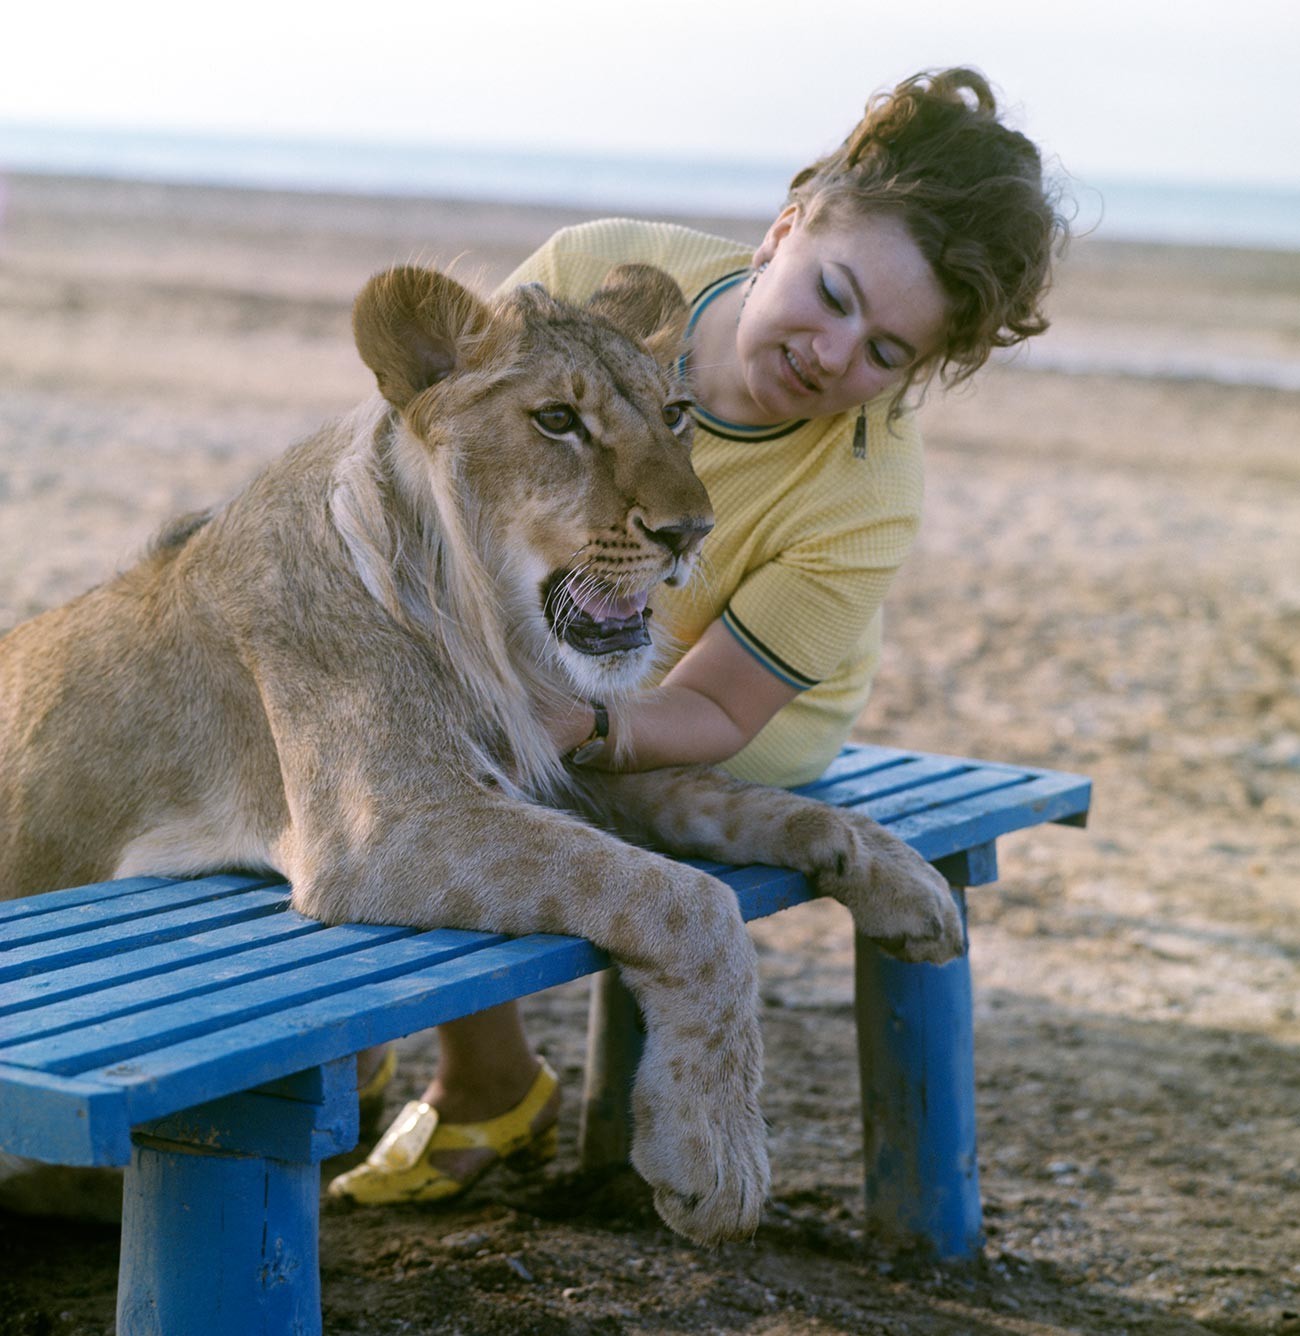 Nina Berberova em uma caminhada com seu leão de estimação King. Costa do Mar Cáspio


